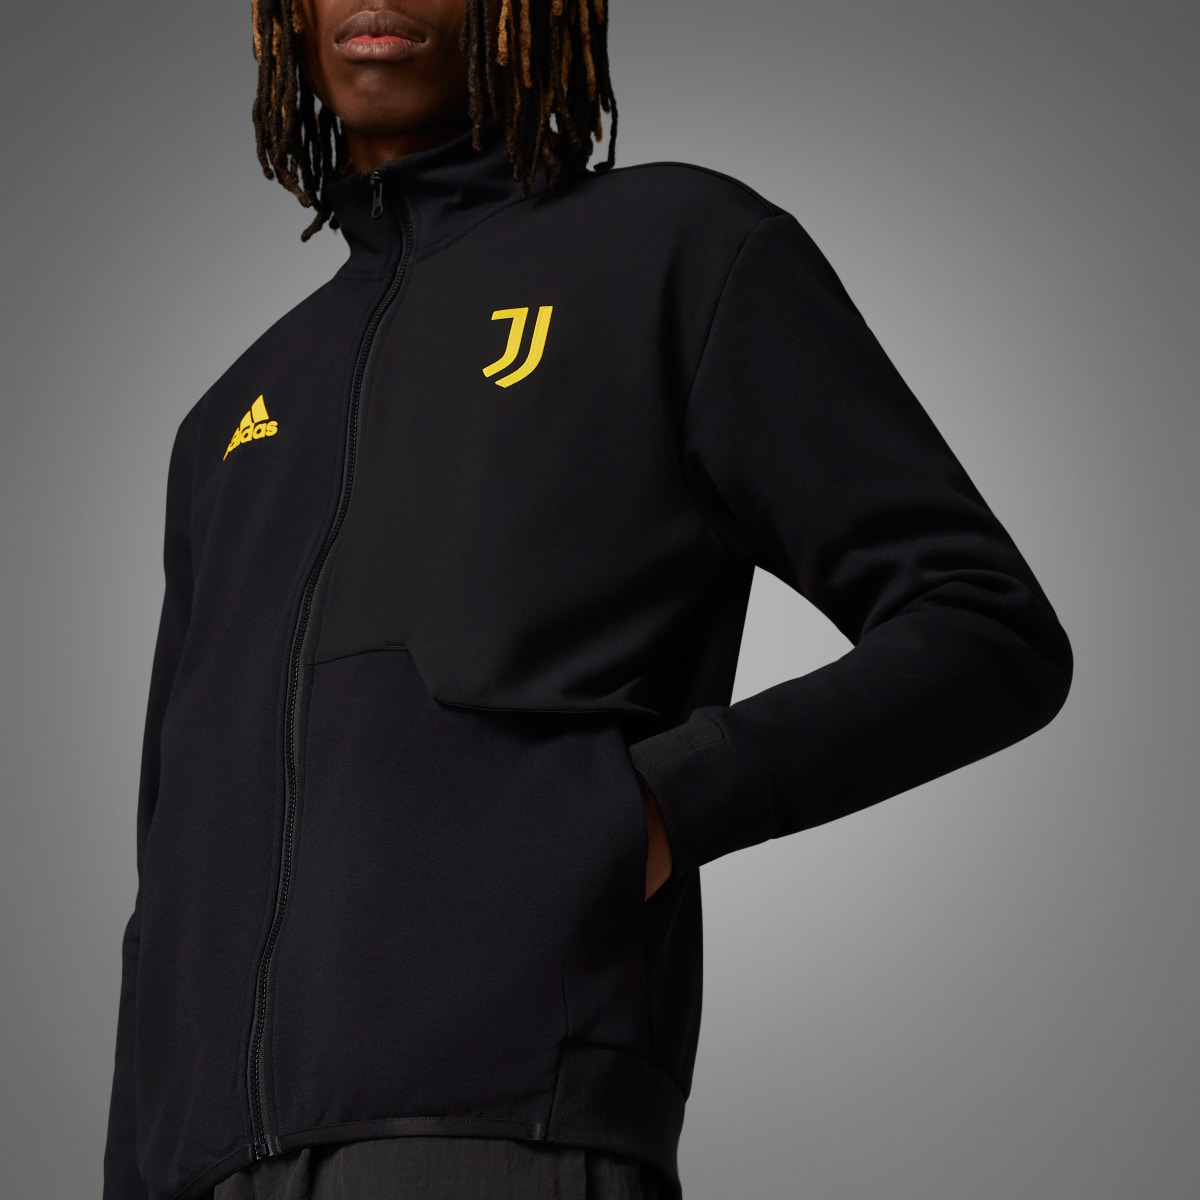 Adidas Juventus Anthem Jacket. 5